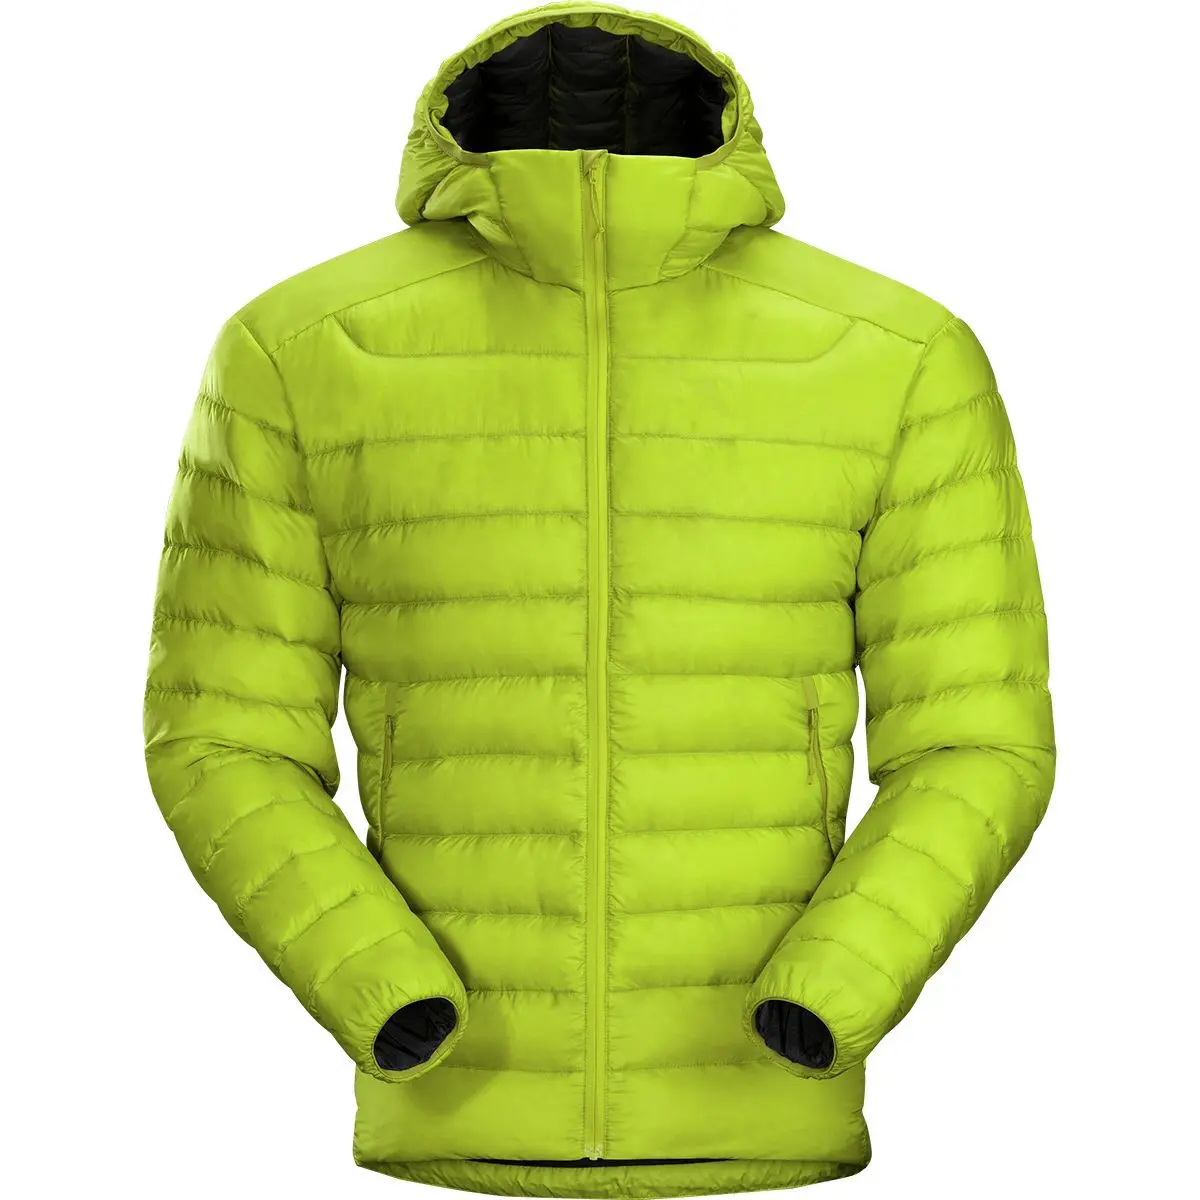 Мужская зимняя куртка с капюшоном, Ультралегкая тонкая куртка на гусином утином пуху с капюшоном, 2021 утиного пуха, 900